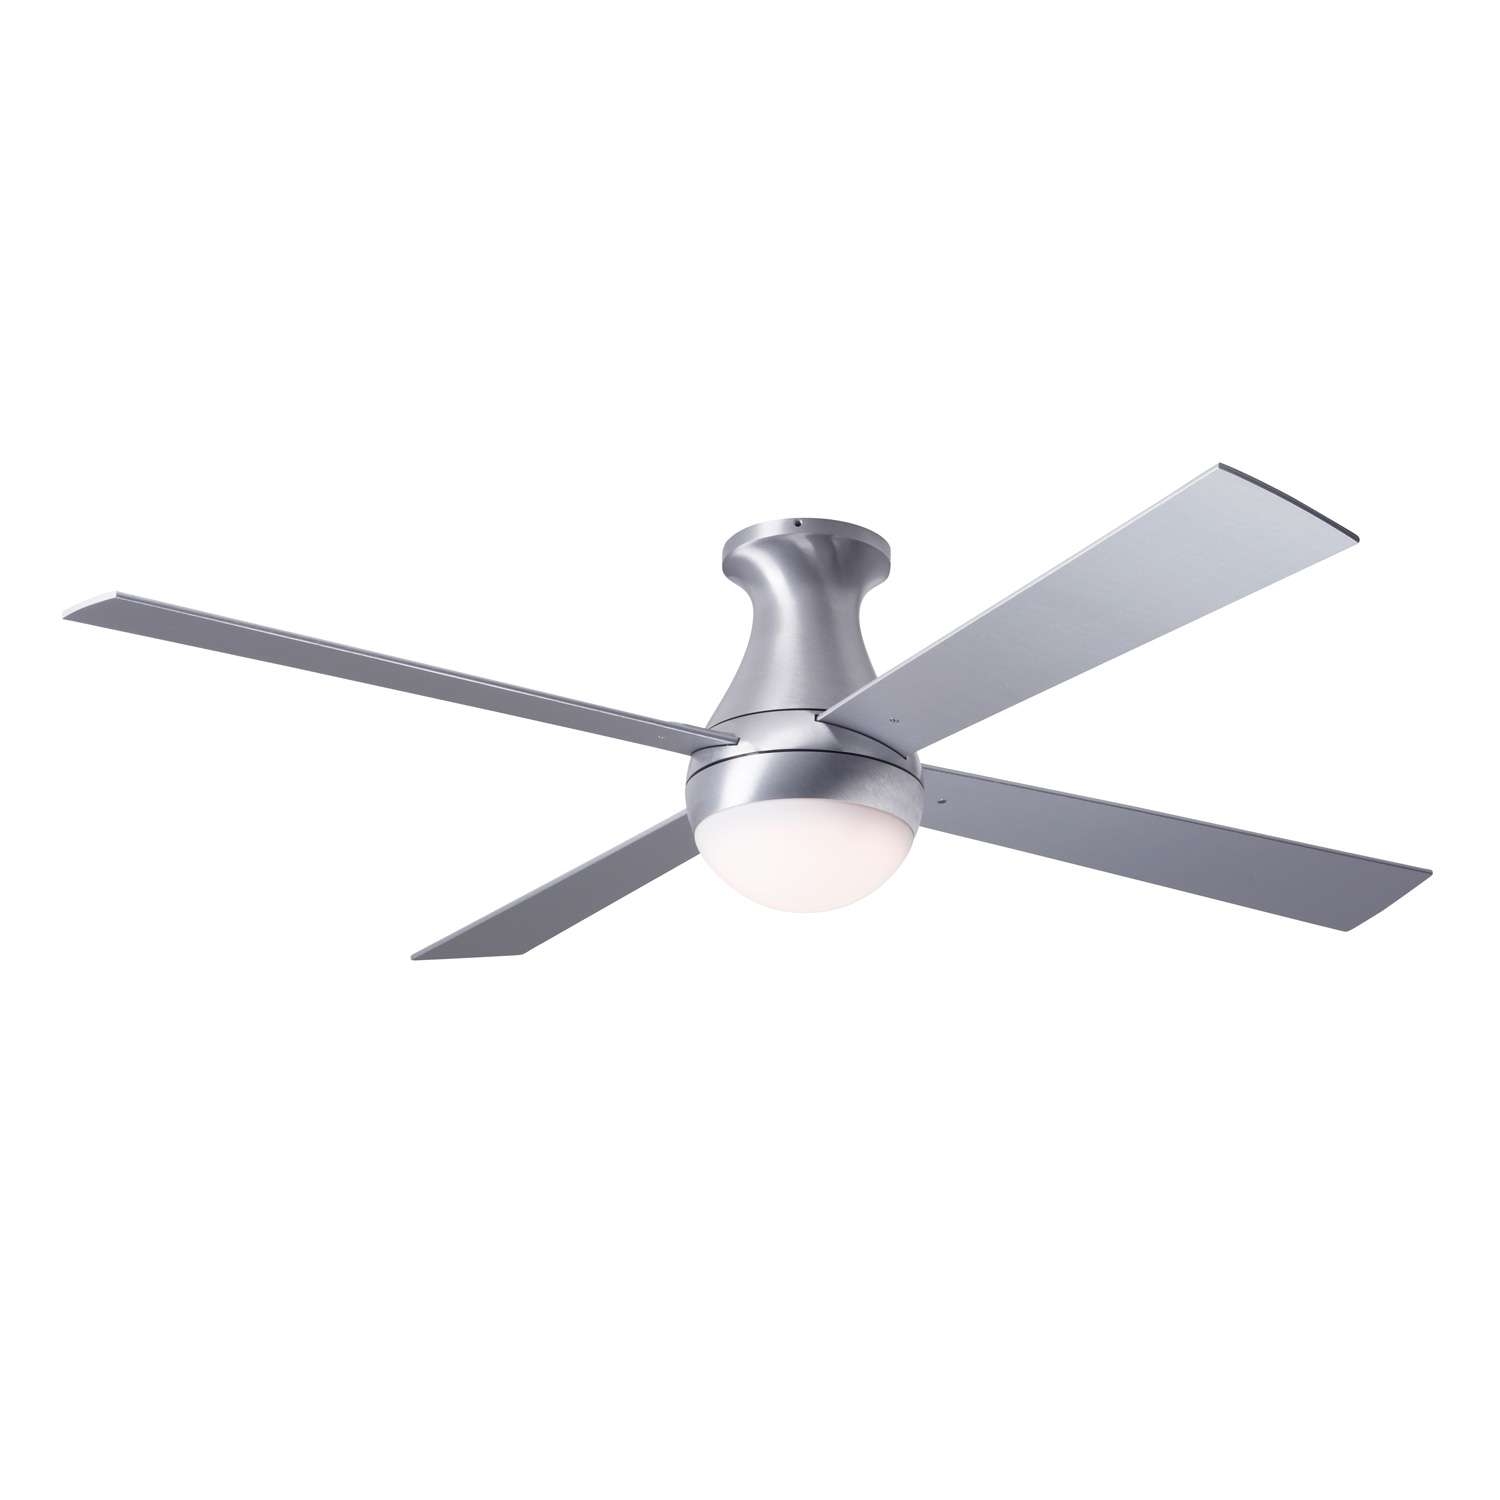 Ball Hugger Ceiling Fan With Lightball flush mount ceiling fan modern fan ylighting